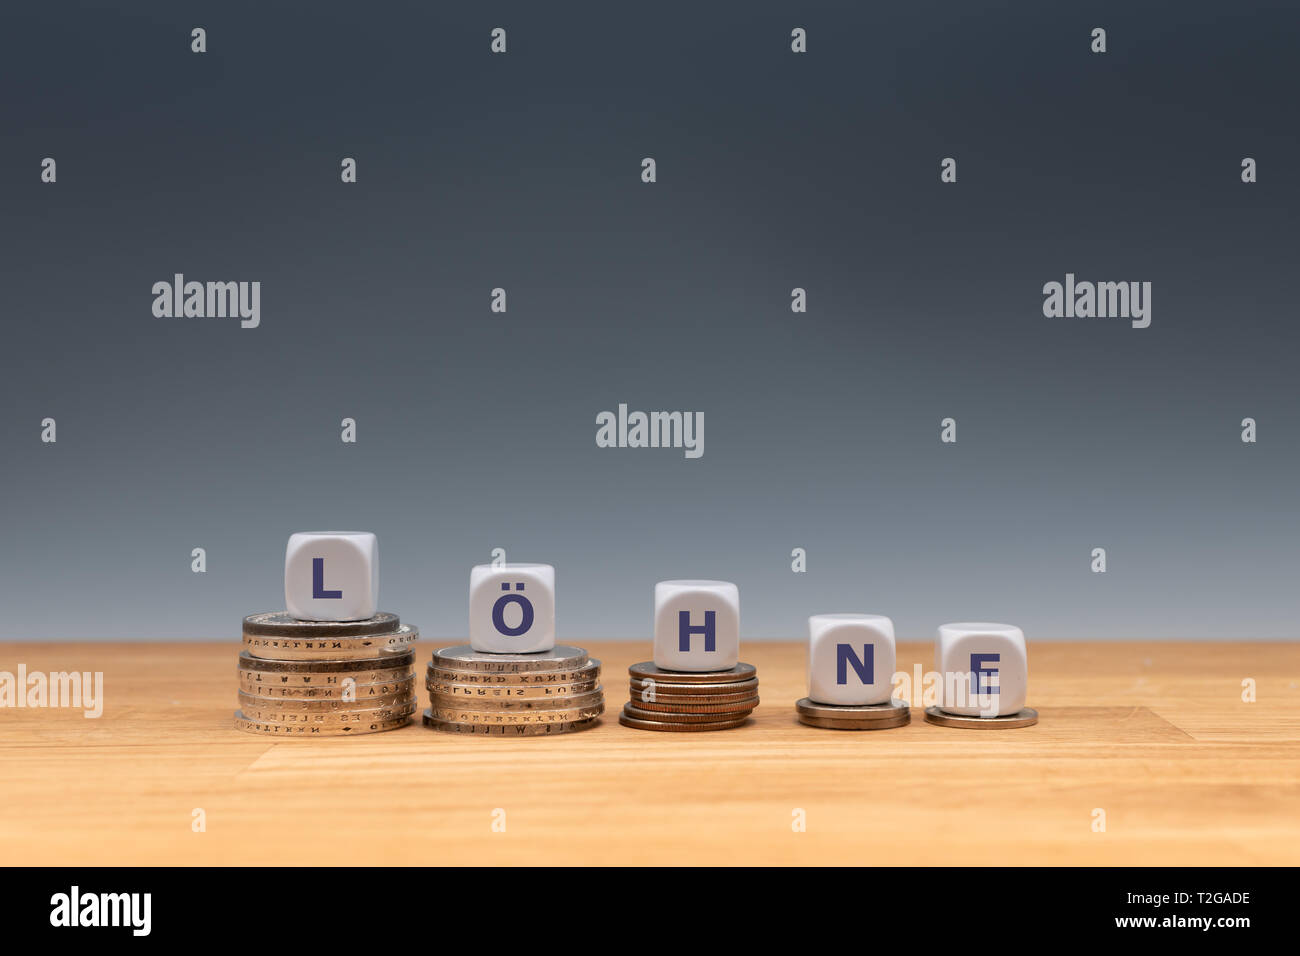 Symbole pour la baisse des salaires. Dés placés sur des piles de pièces forment le mot allemand 'Barre' ('LES SALAIRES" en anglais). Banque D'Images